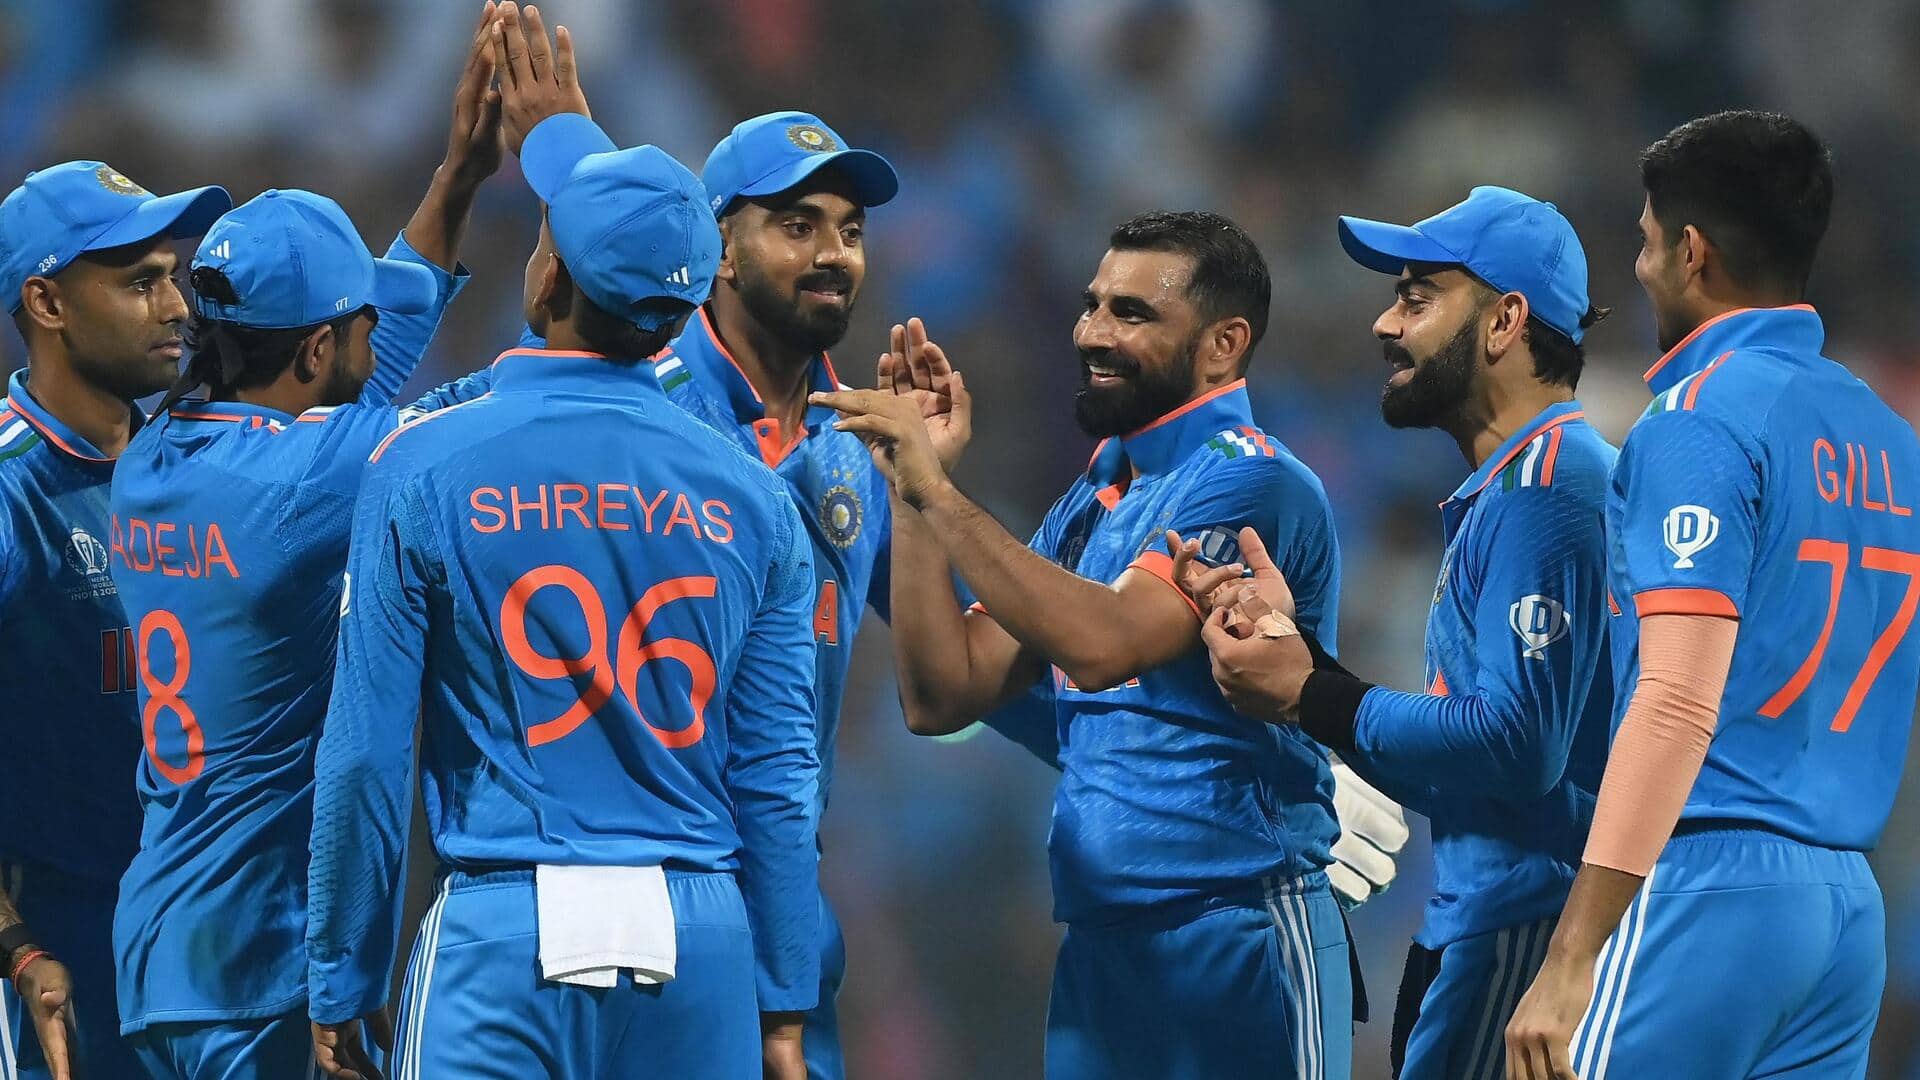 रोहित शर्मा ने भारत के सेमीफाइनल में पहुंचने के बाद दिया अहम बयान, जानिए क्या कहा